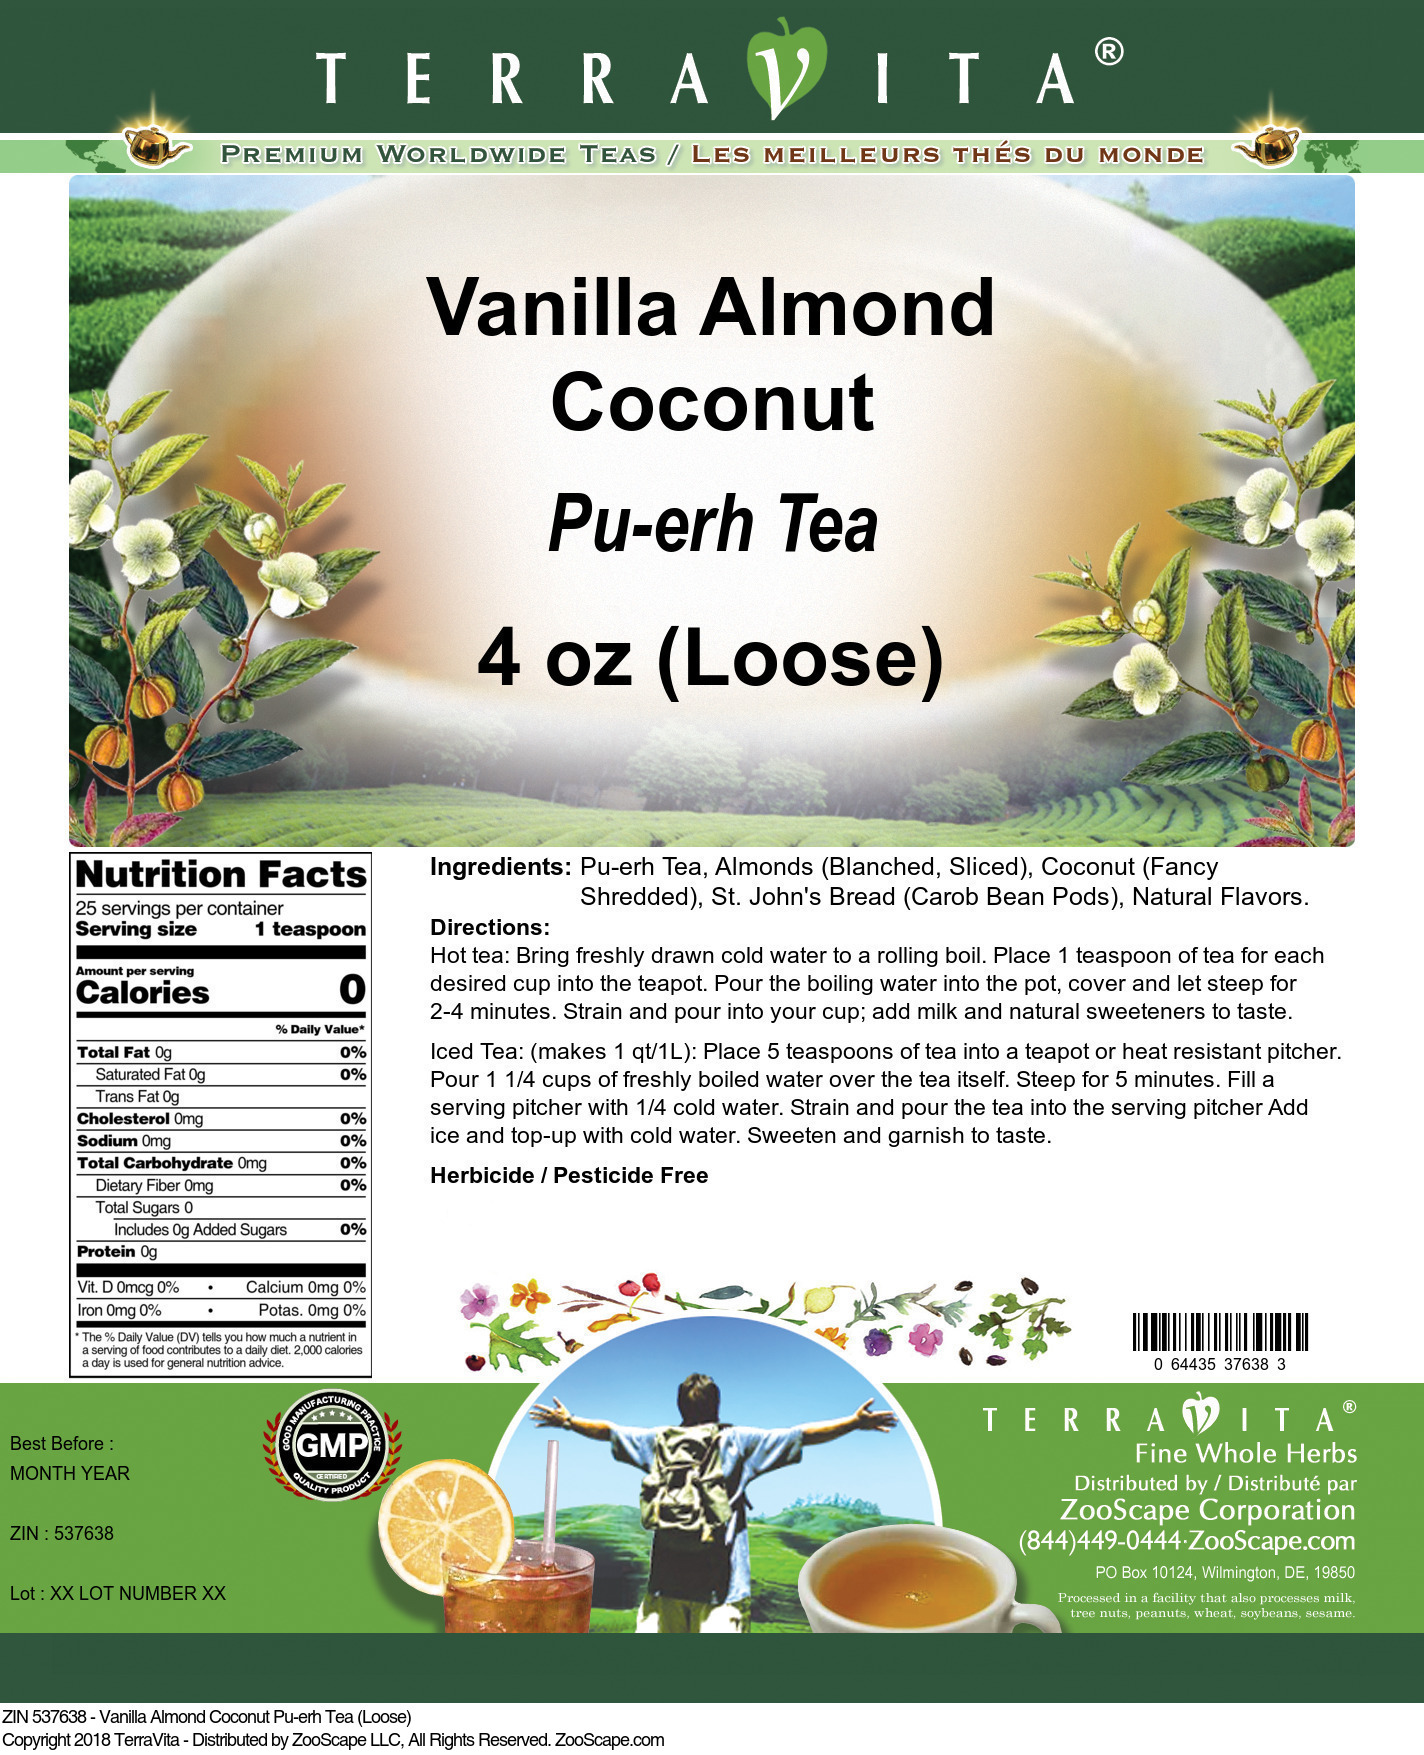 Vanilla Almond Coconut Pu-erh Tea (Loose) - Label